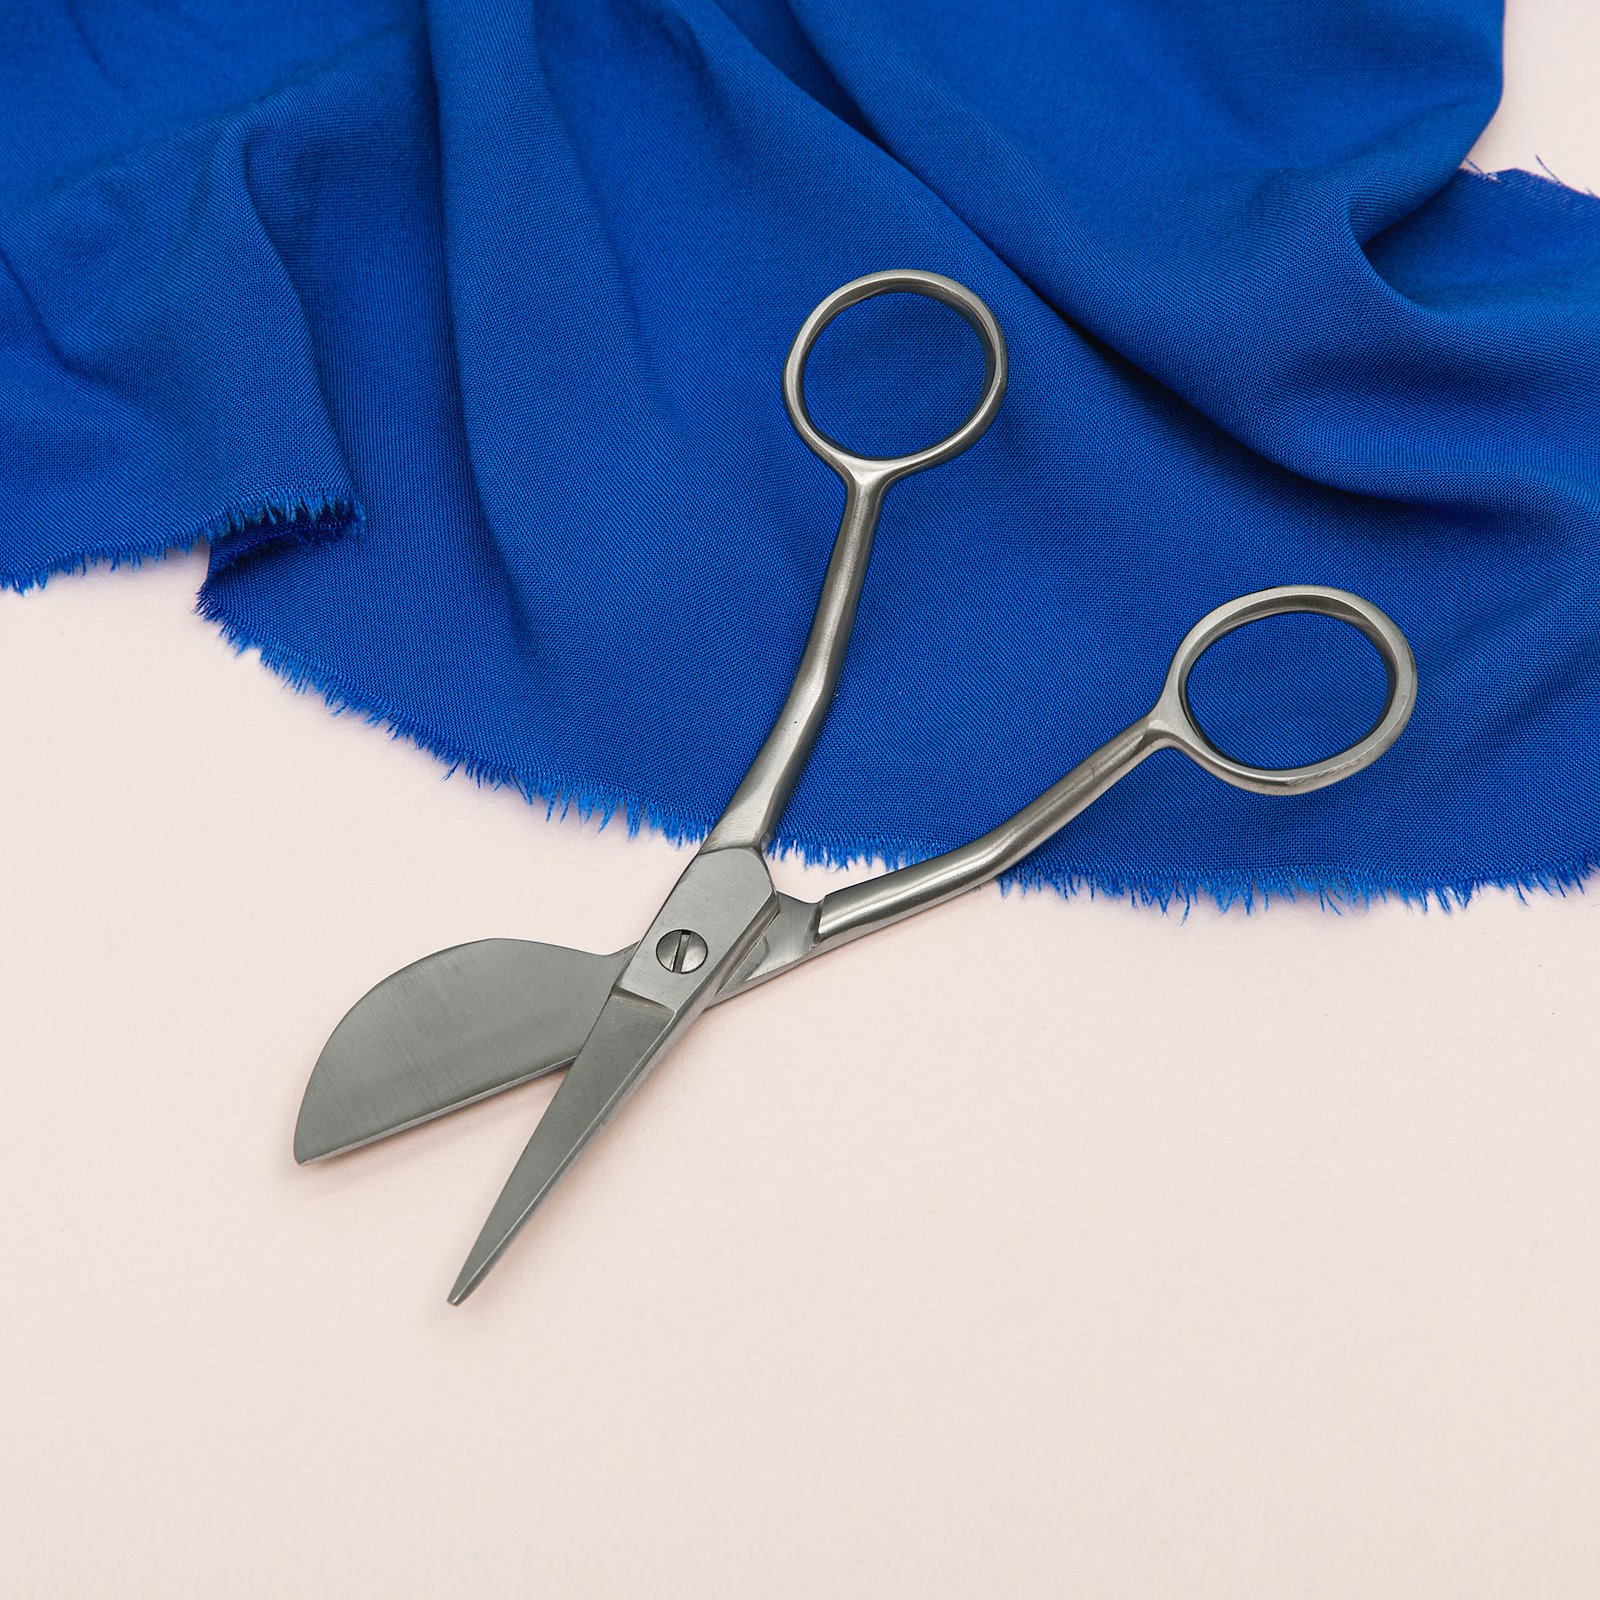 Applique scissors 15cm 42022_sskit